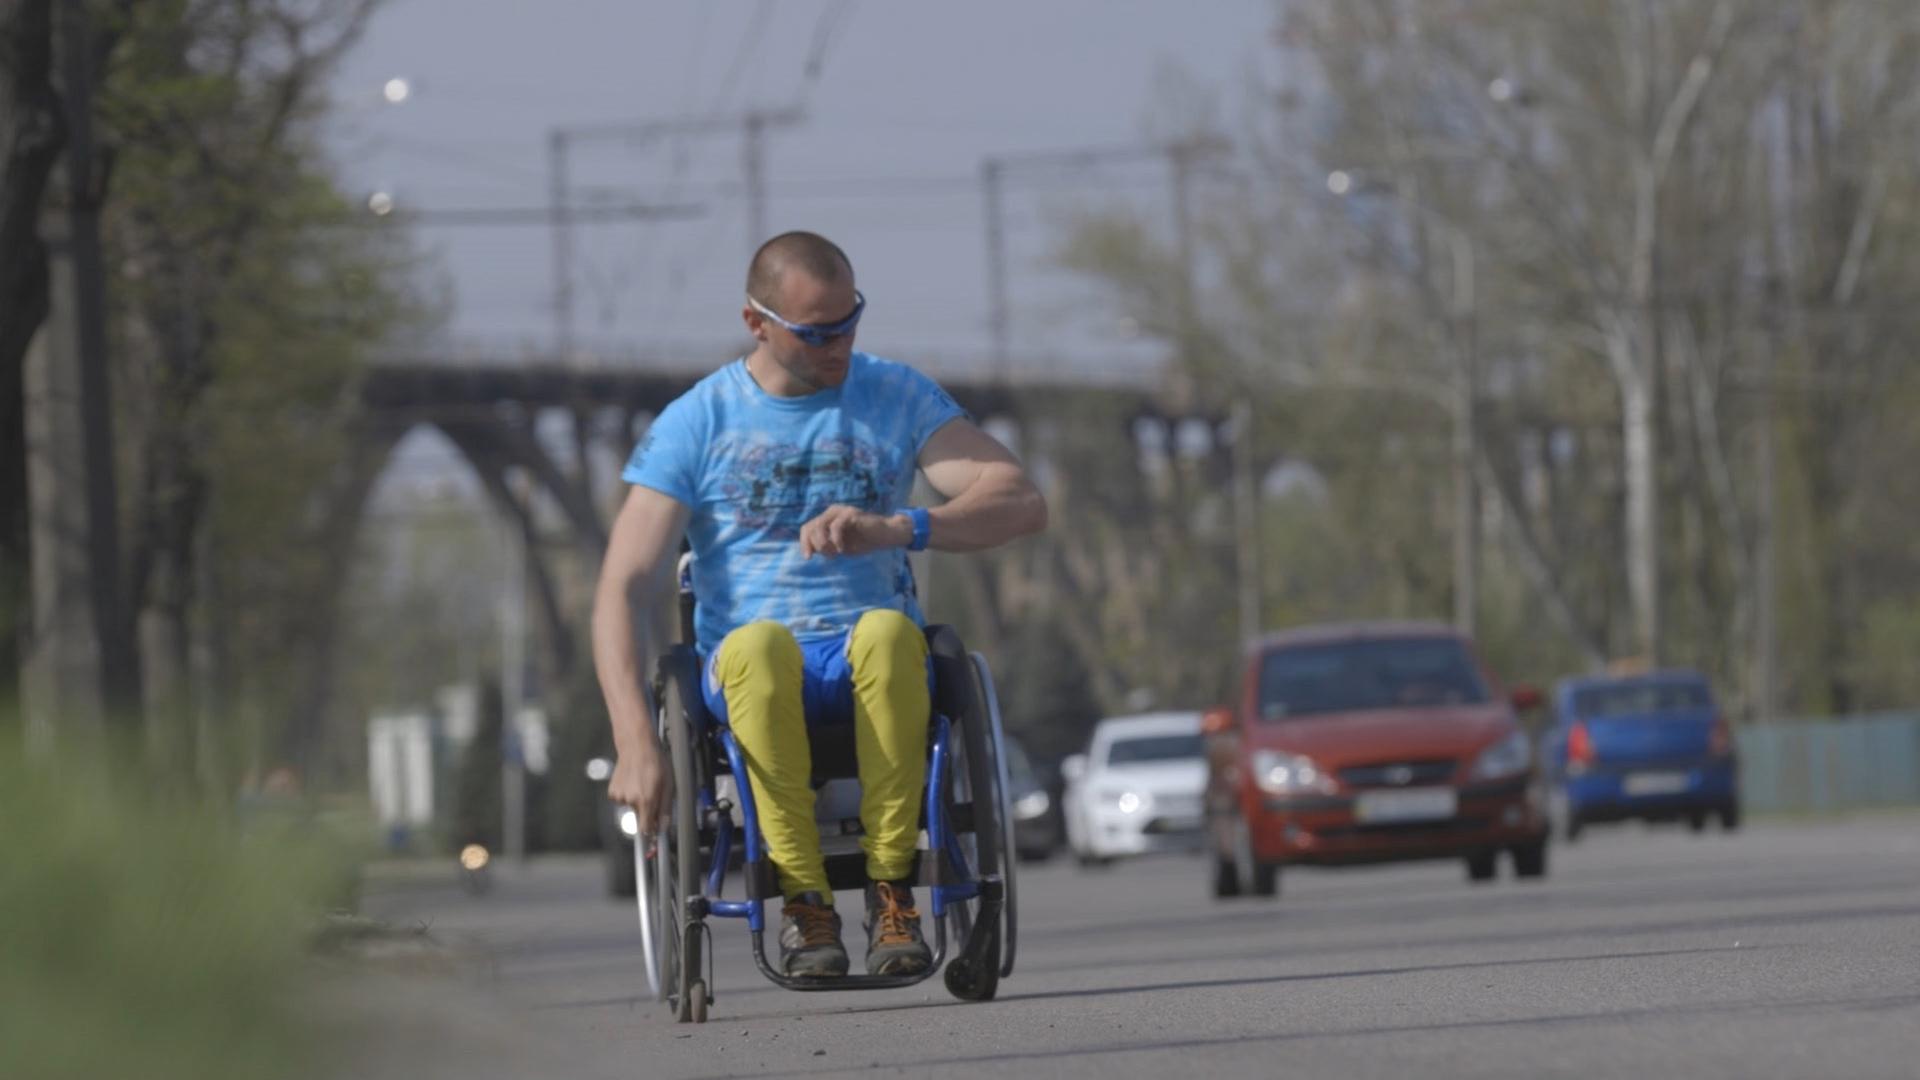 Ein Rollstuhlfahrer fährt am Rand einer befahrenen Straße und blickt auf seine Uhr: Szene aus dem Film "Pushing Boundaries" von Lesia Cordonets.